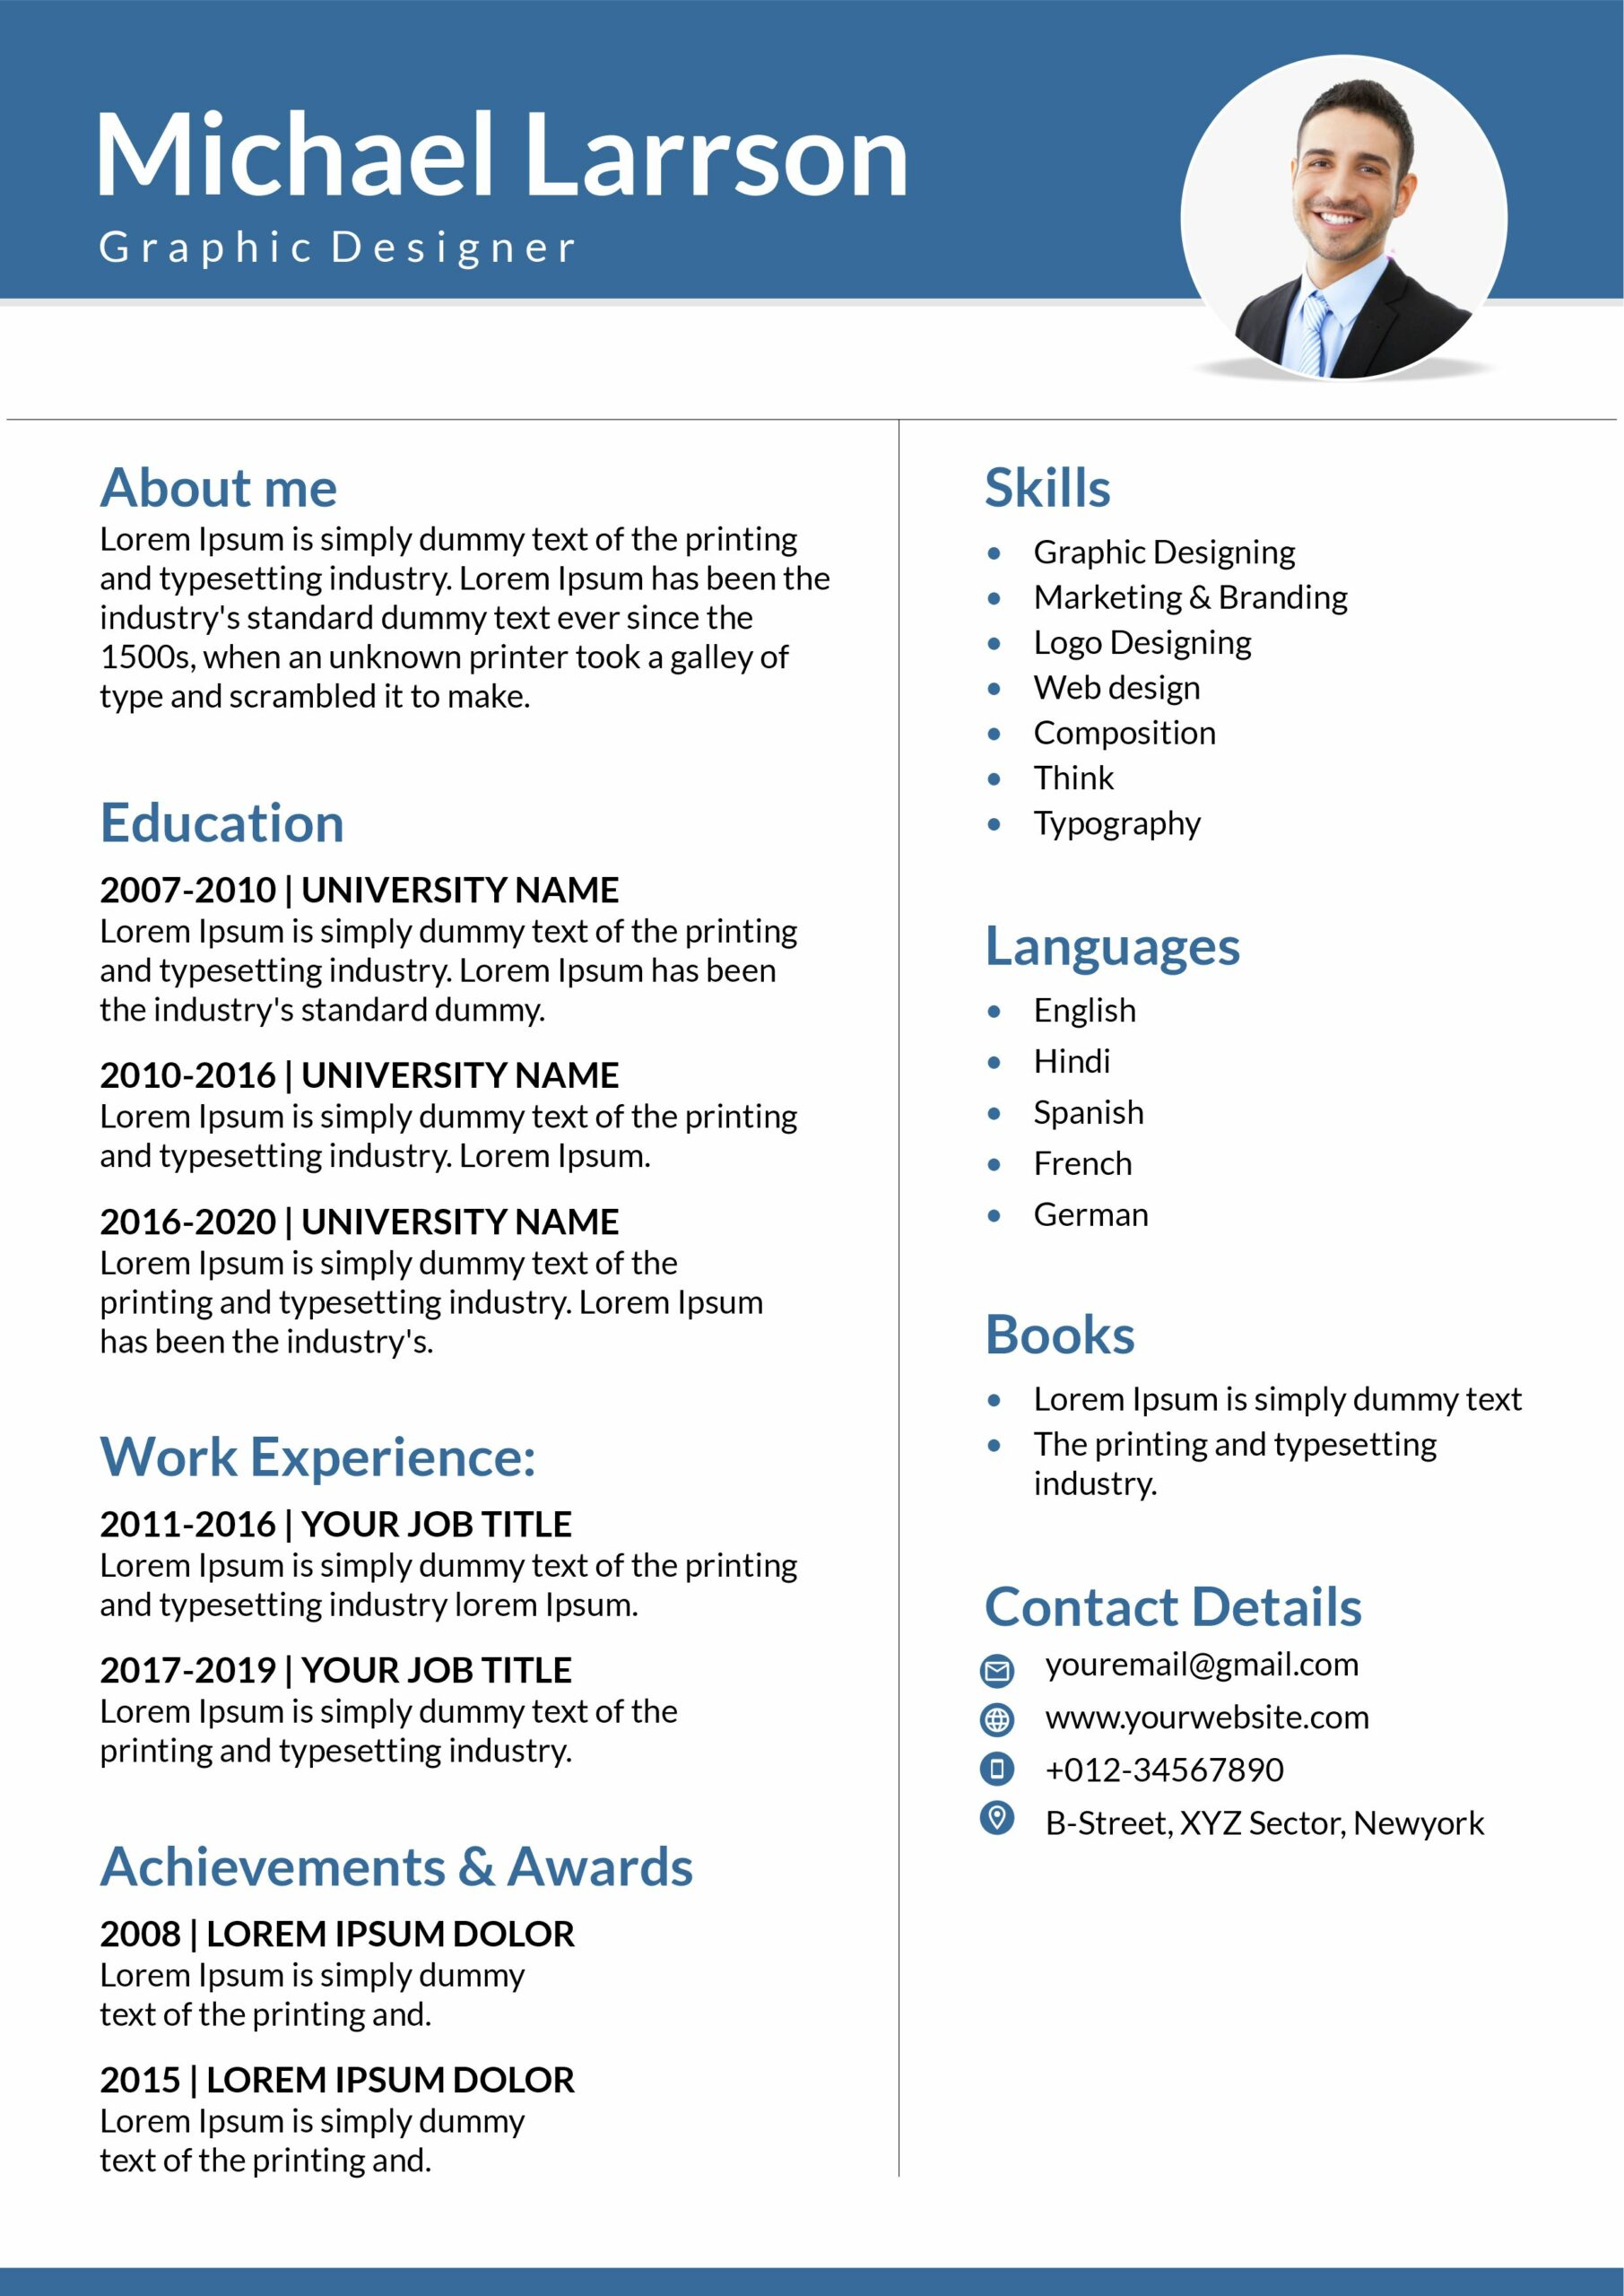 resume vs CV